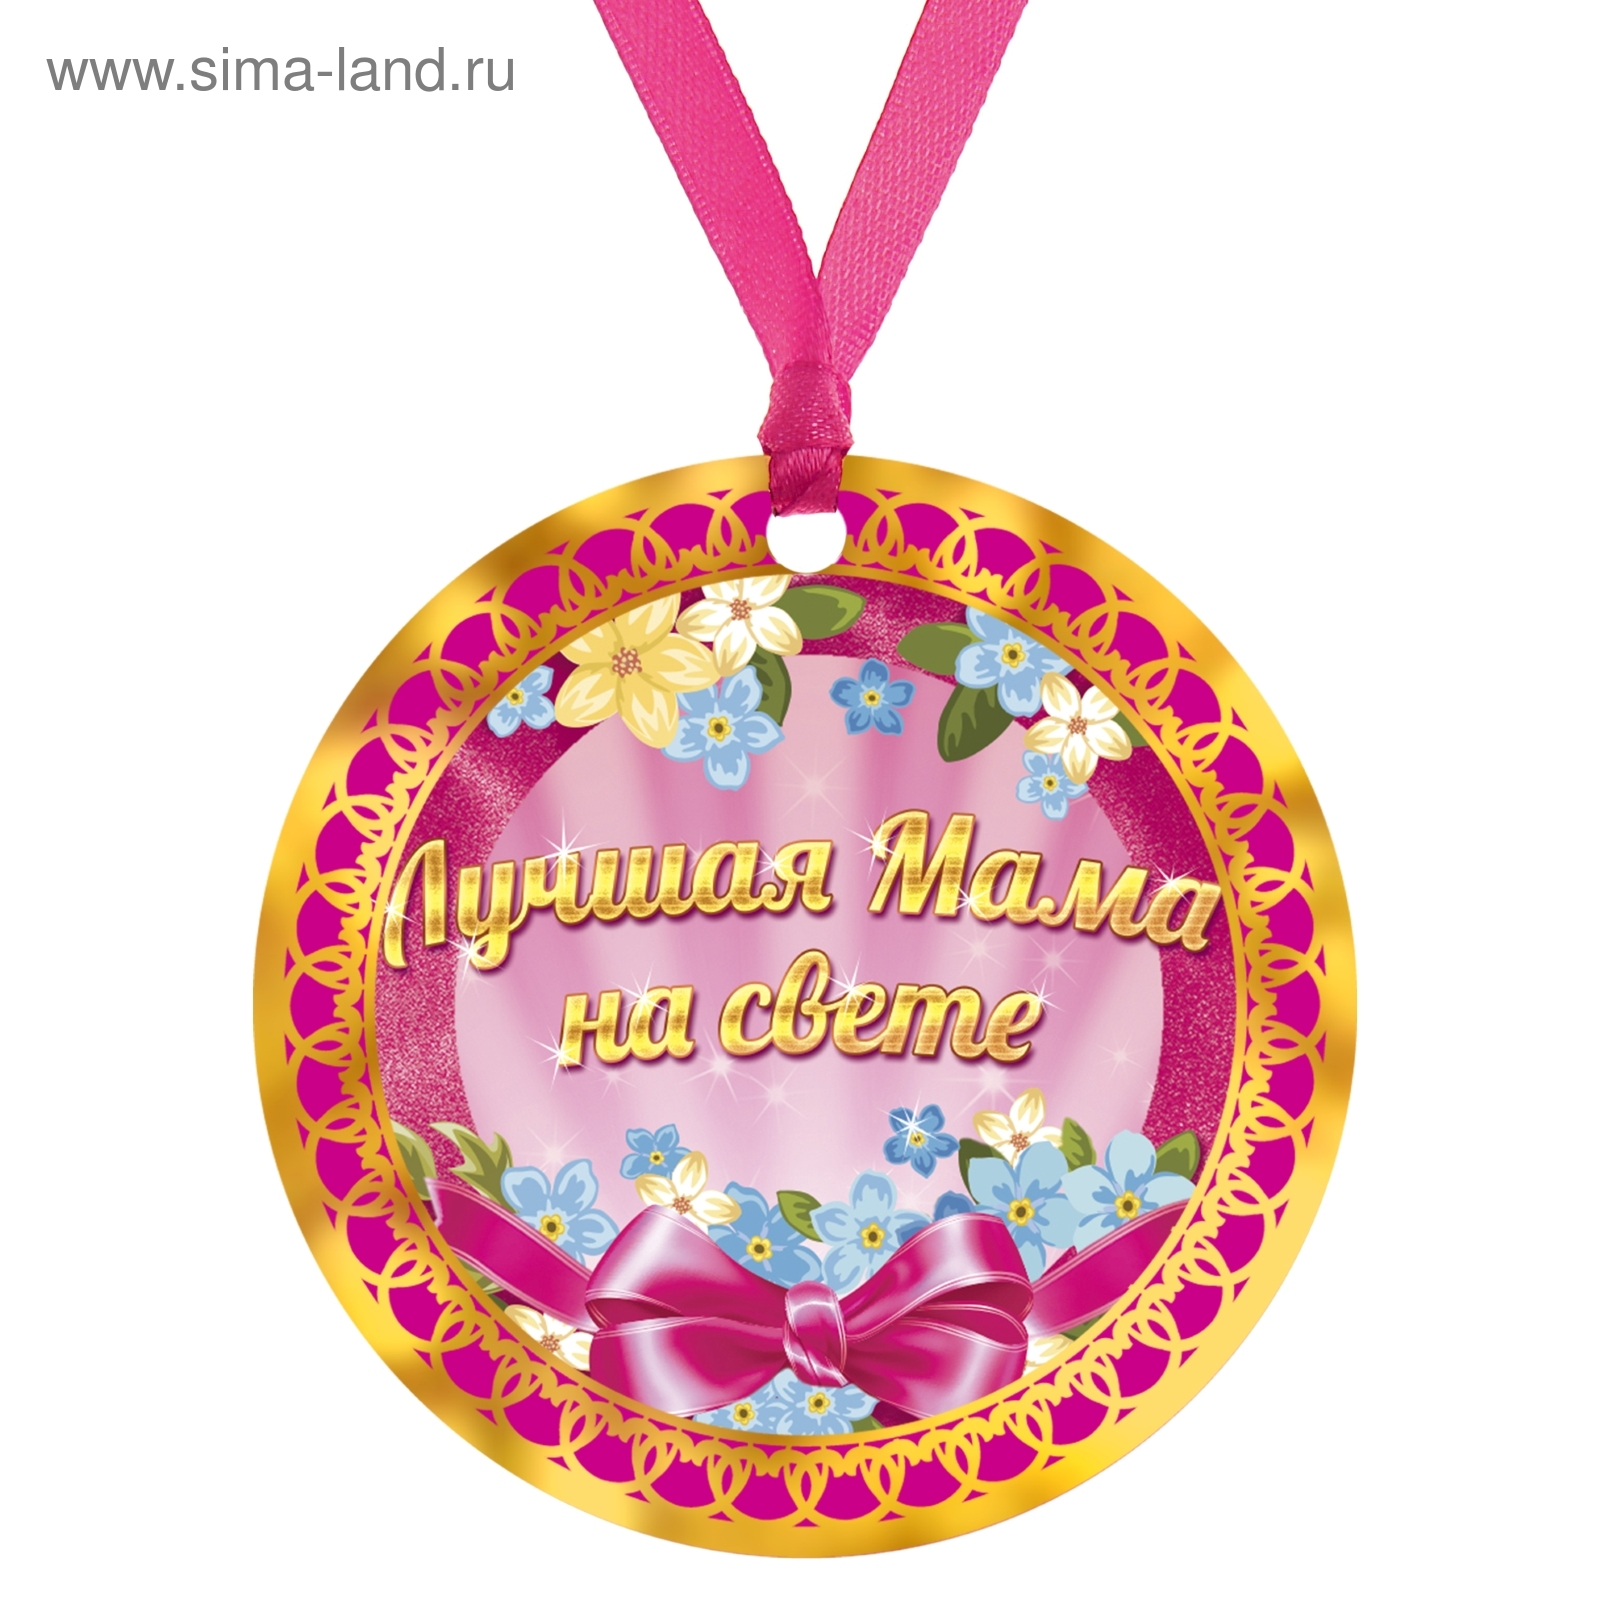 В преддверии Дня матери в Первомайском районе вручили медали Союза женщин России